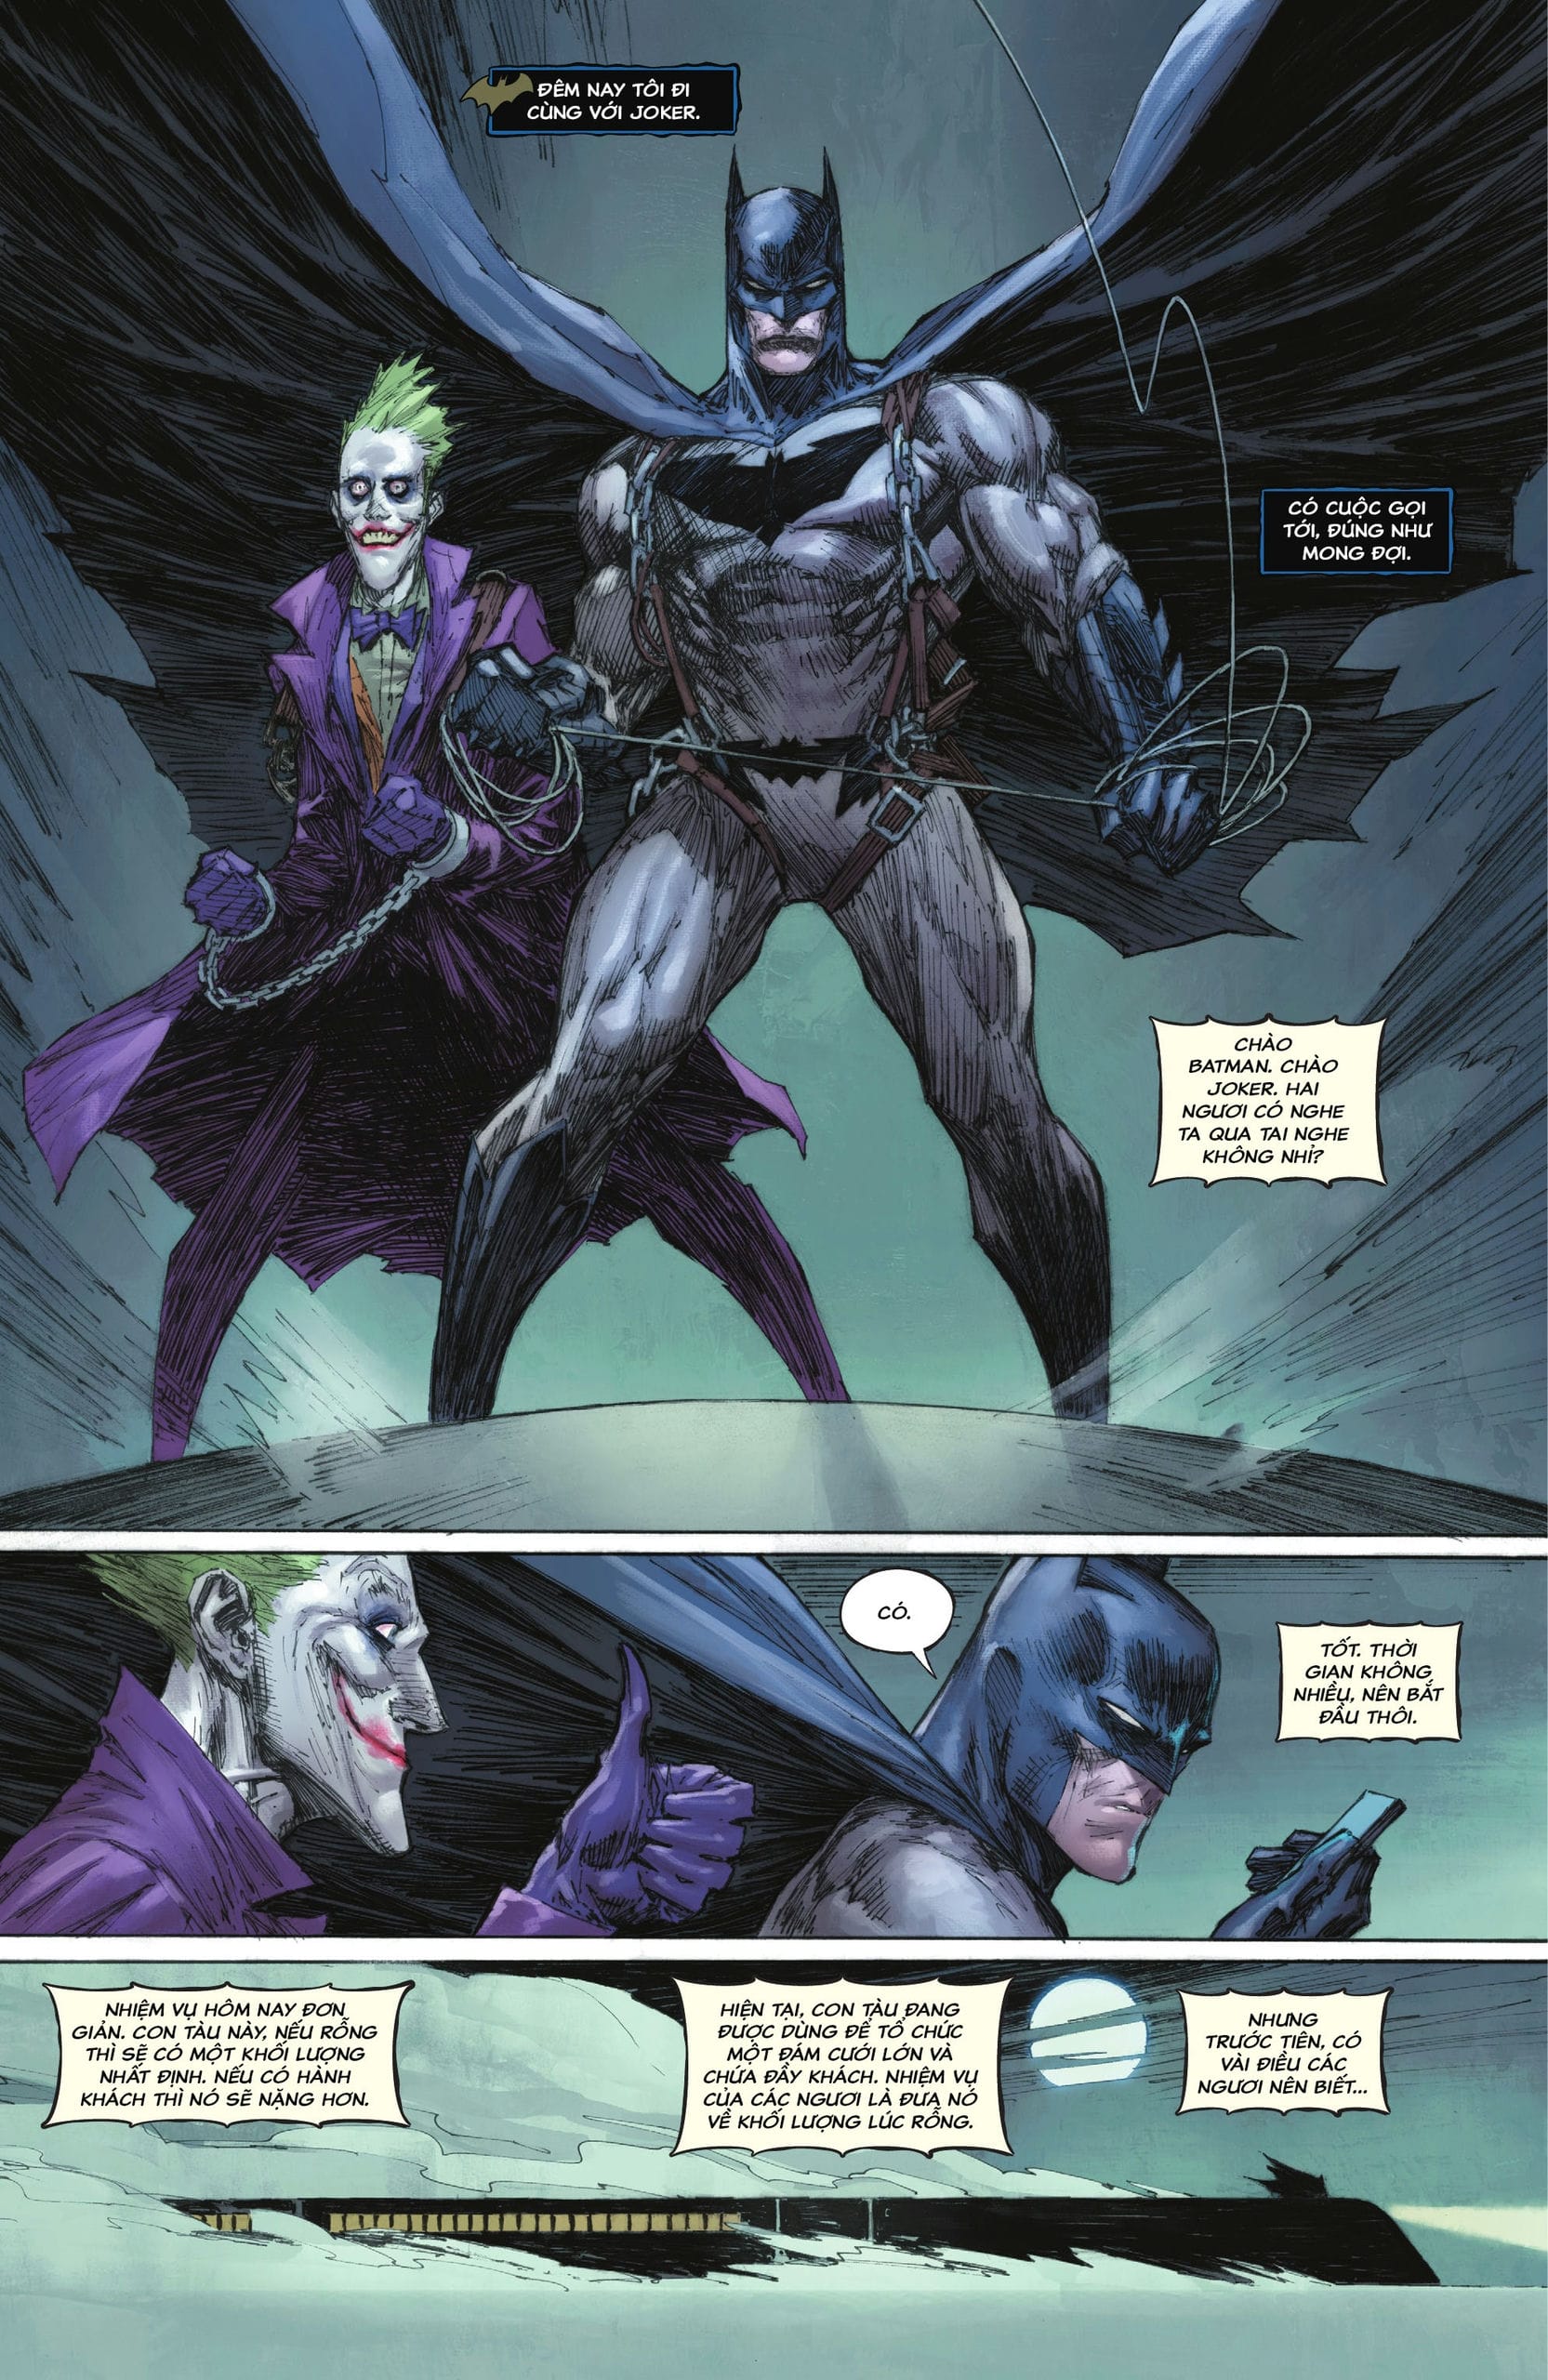 https://langgeek.net/wp-content/webpc-passthru.php?src=https://langgeek.net/wp-content/uploads/2023/02/Batman-The-Joker-The-Deadly-Duo-2022-004-013.jpg&nocache=1